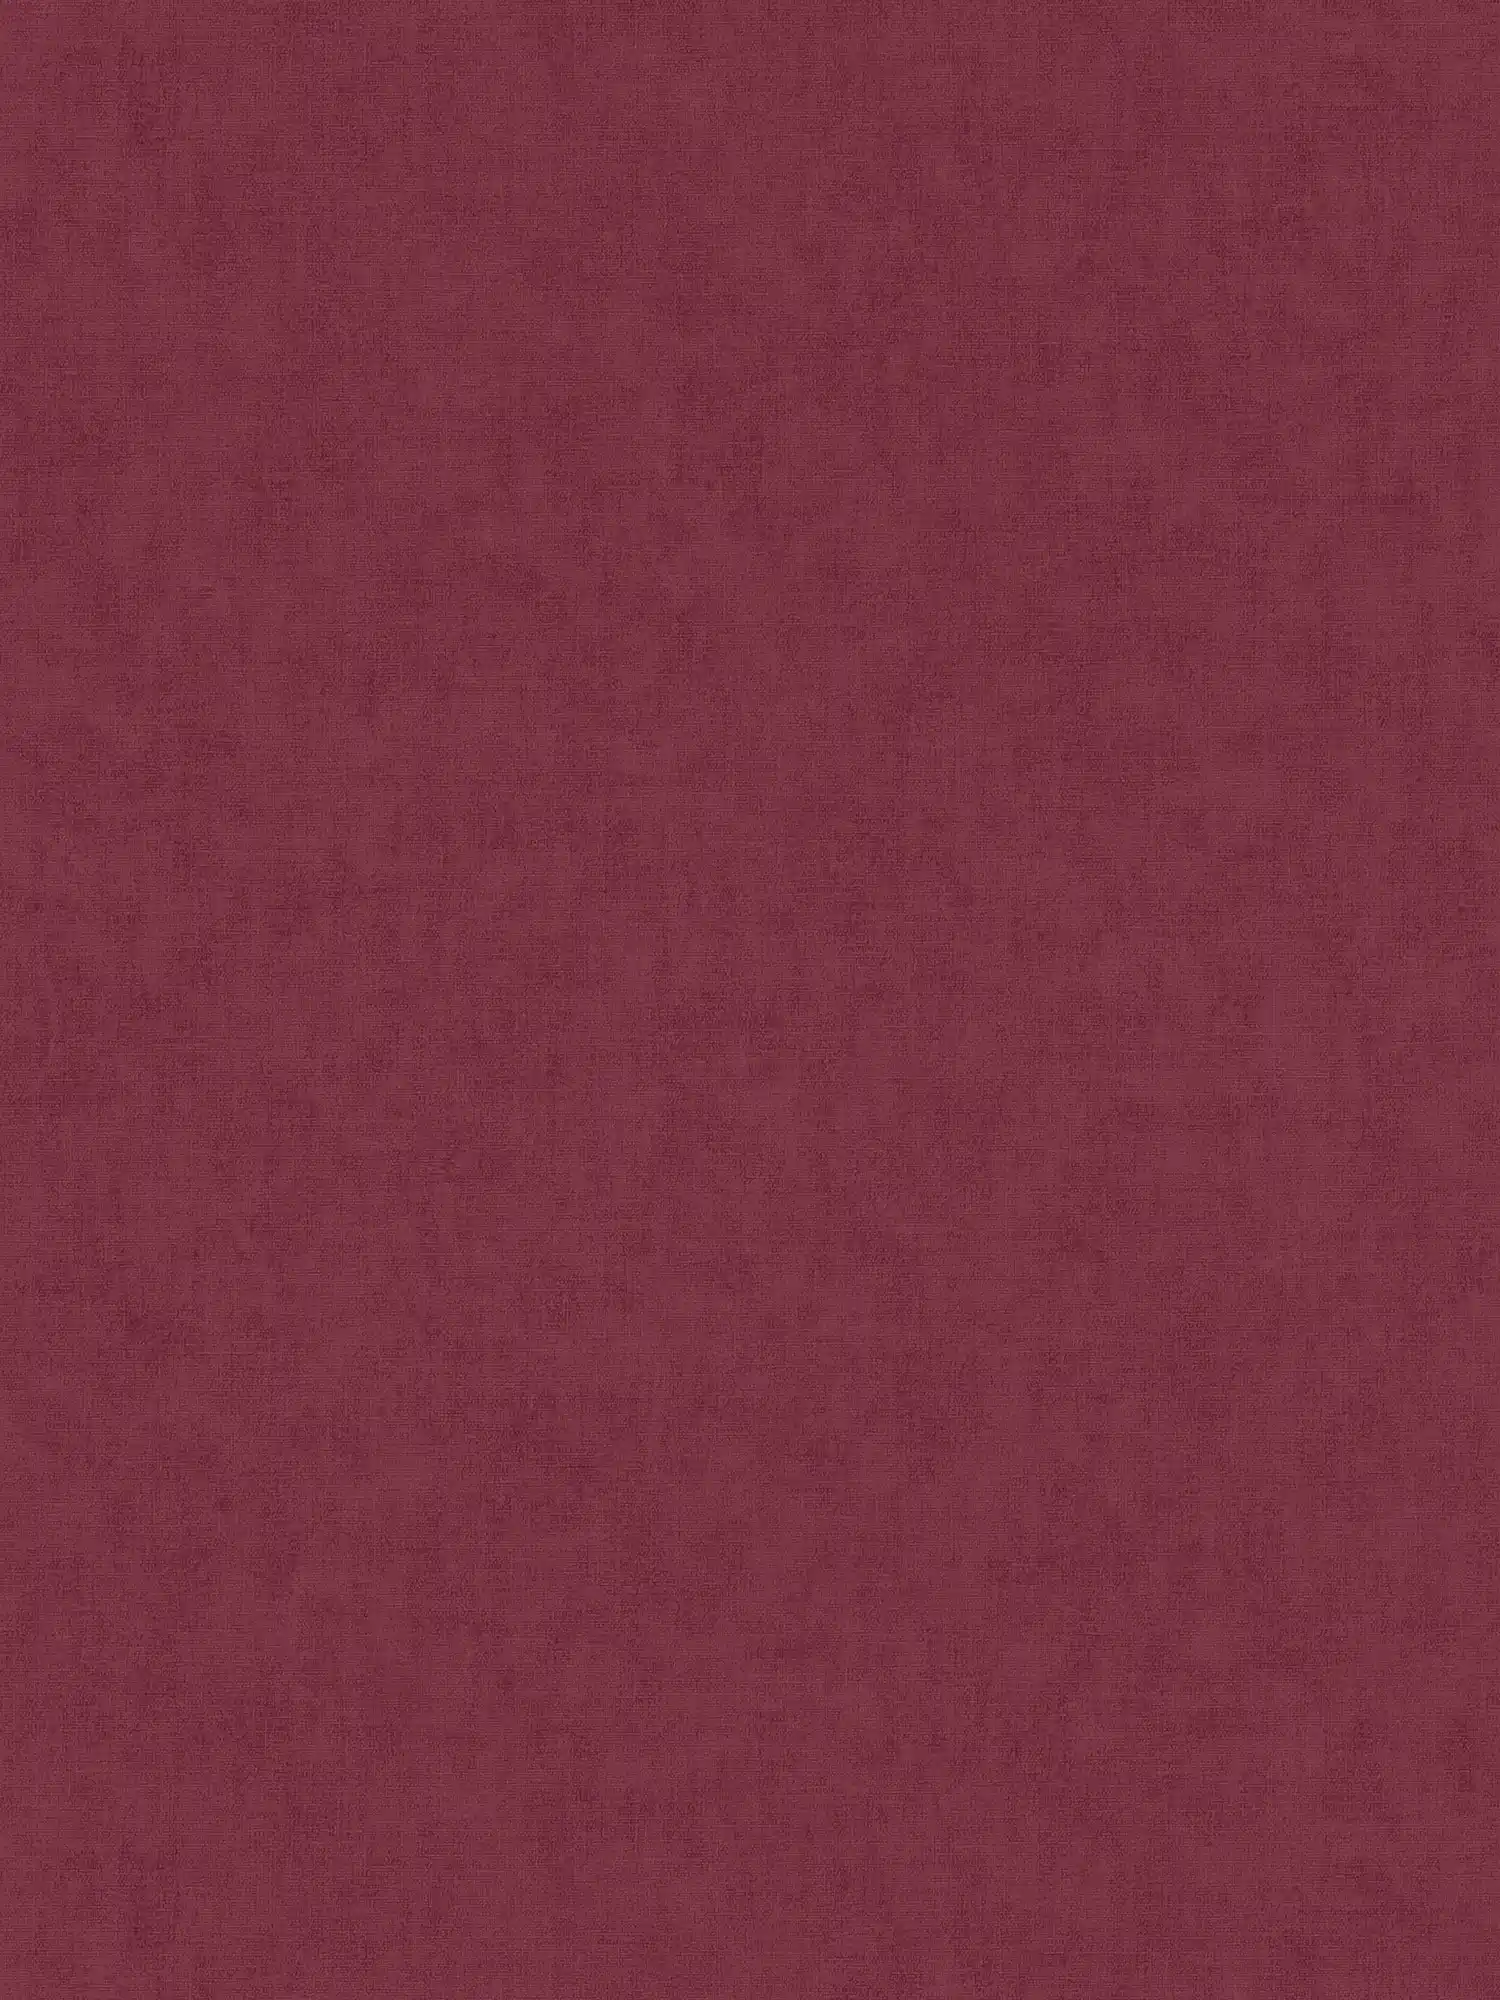 Scandinavisch vliesbehang textiel look - rood
